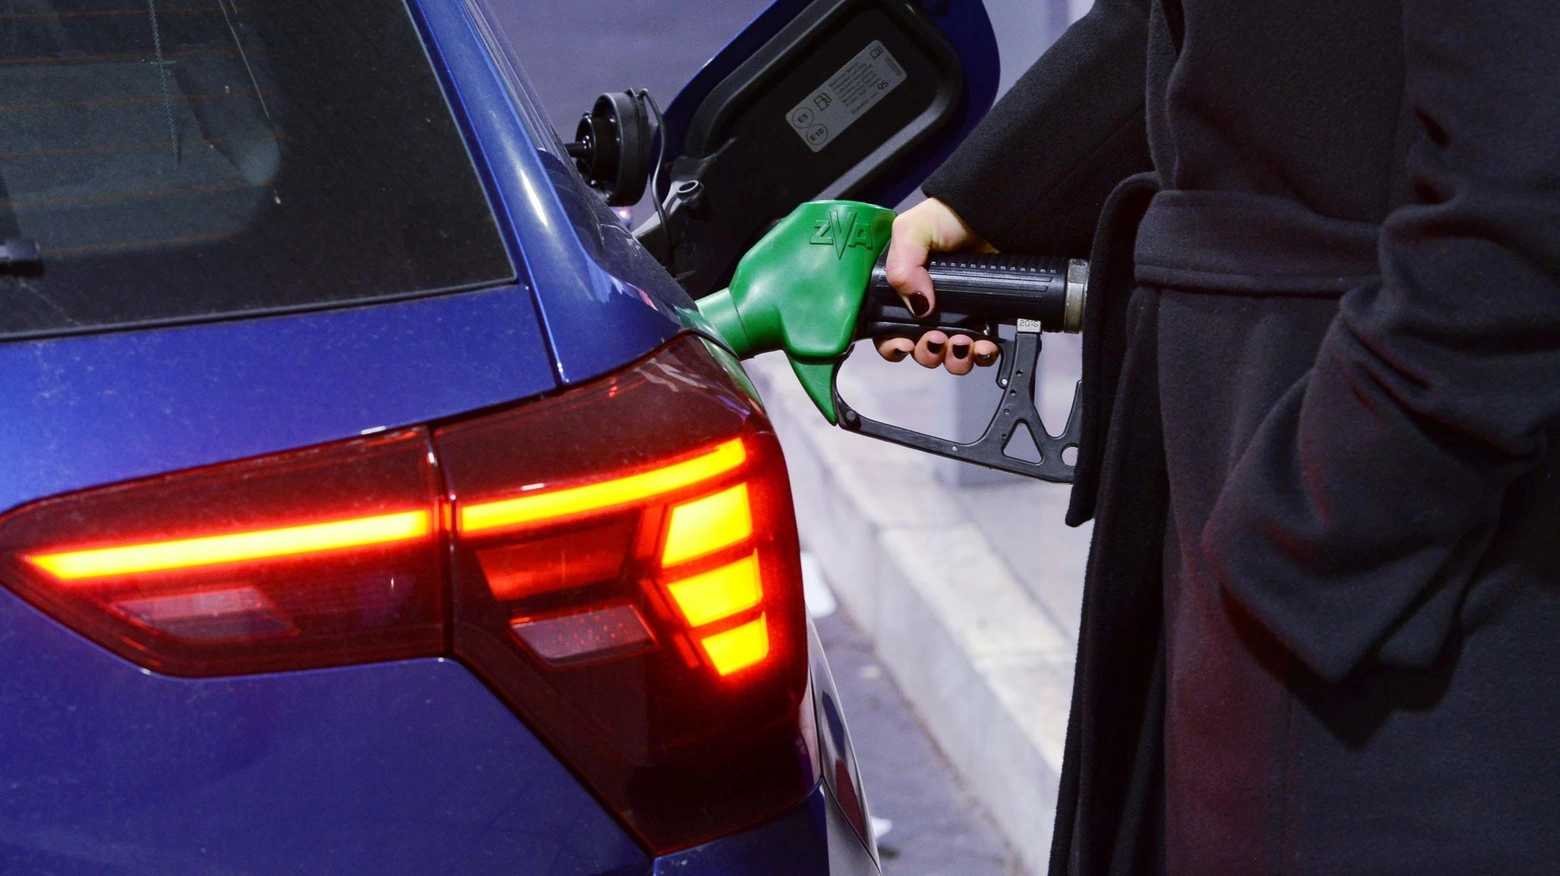 Carburante alle stelle  Benzina a 2 euro al litro  "Aumenti anche del 5%  Si specula sulle ferie"